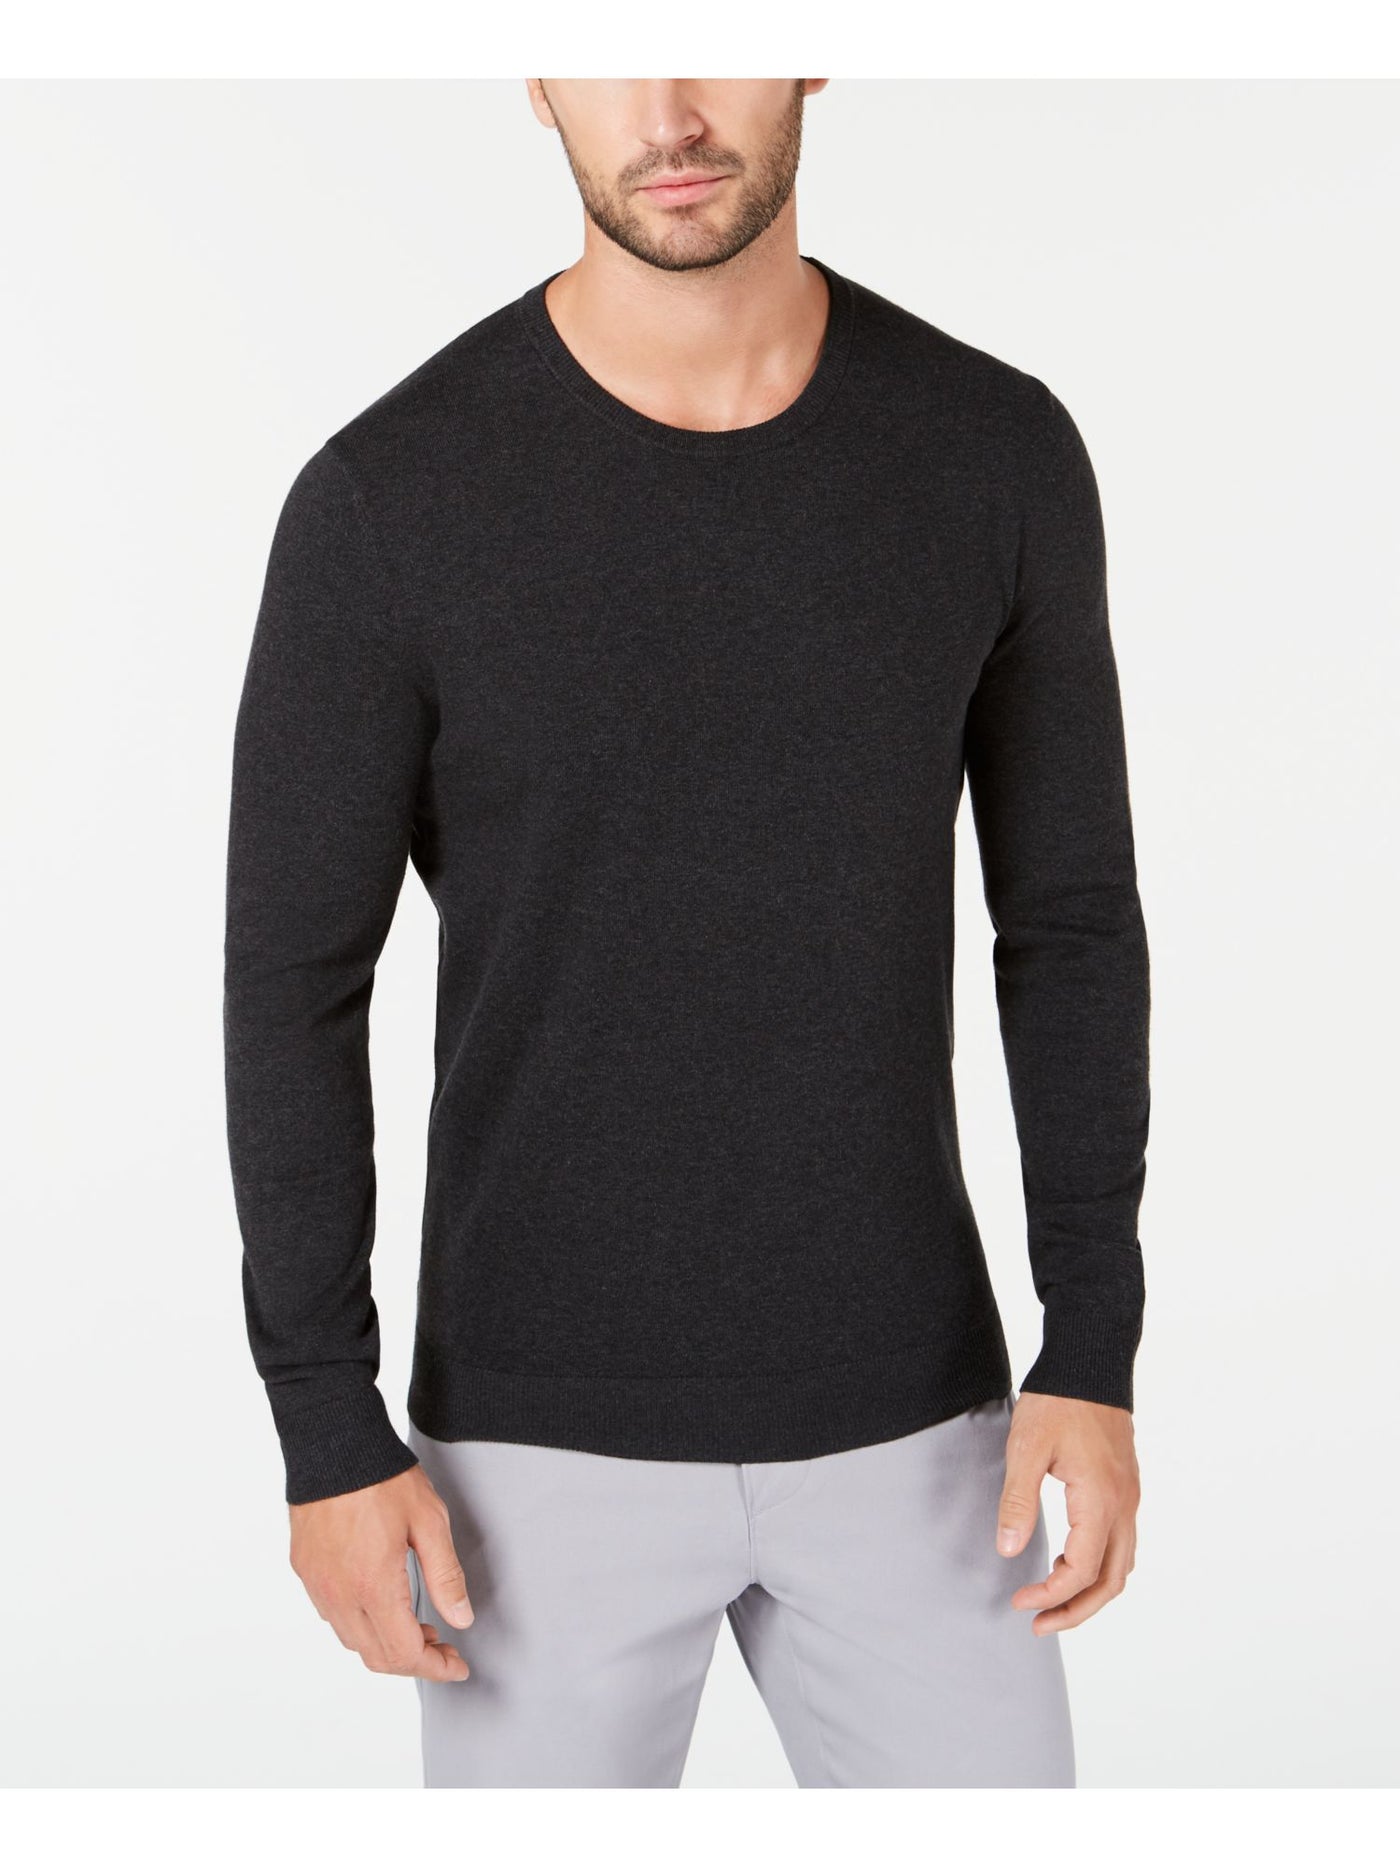 ALFANI Mens Gray Crew Neck Pullover Sweater L